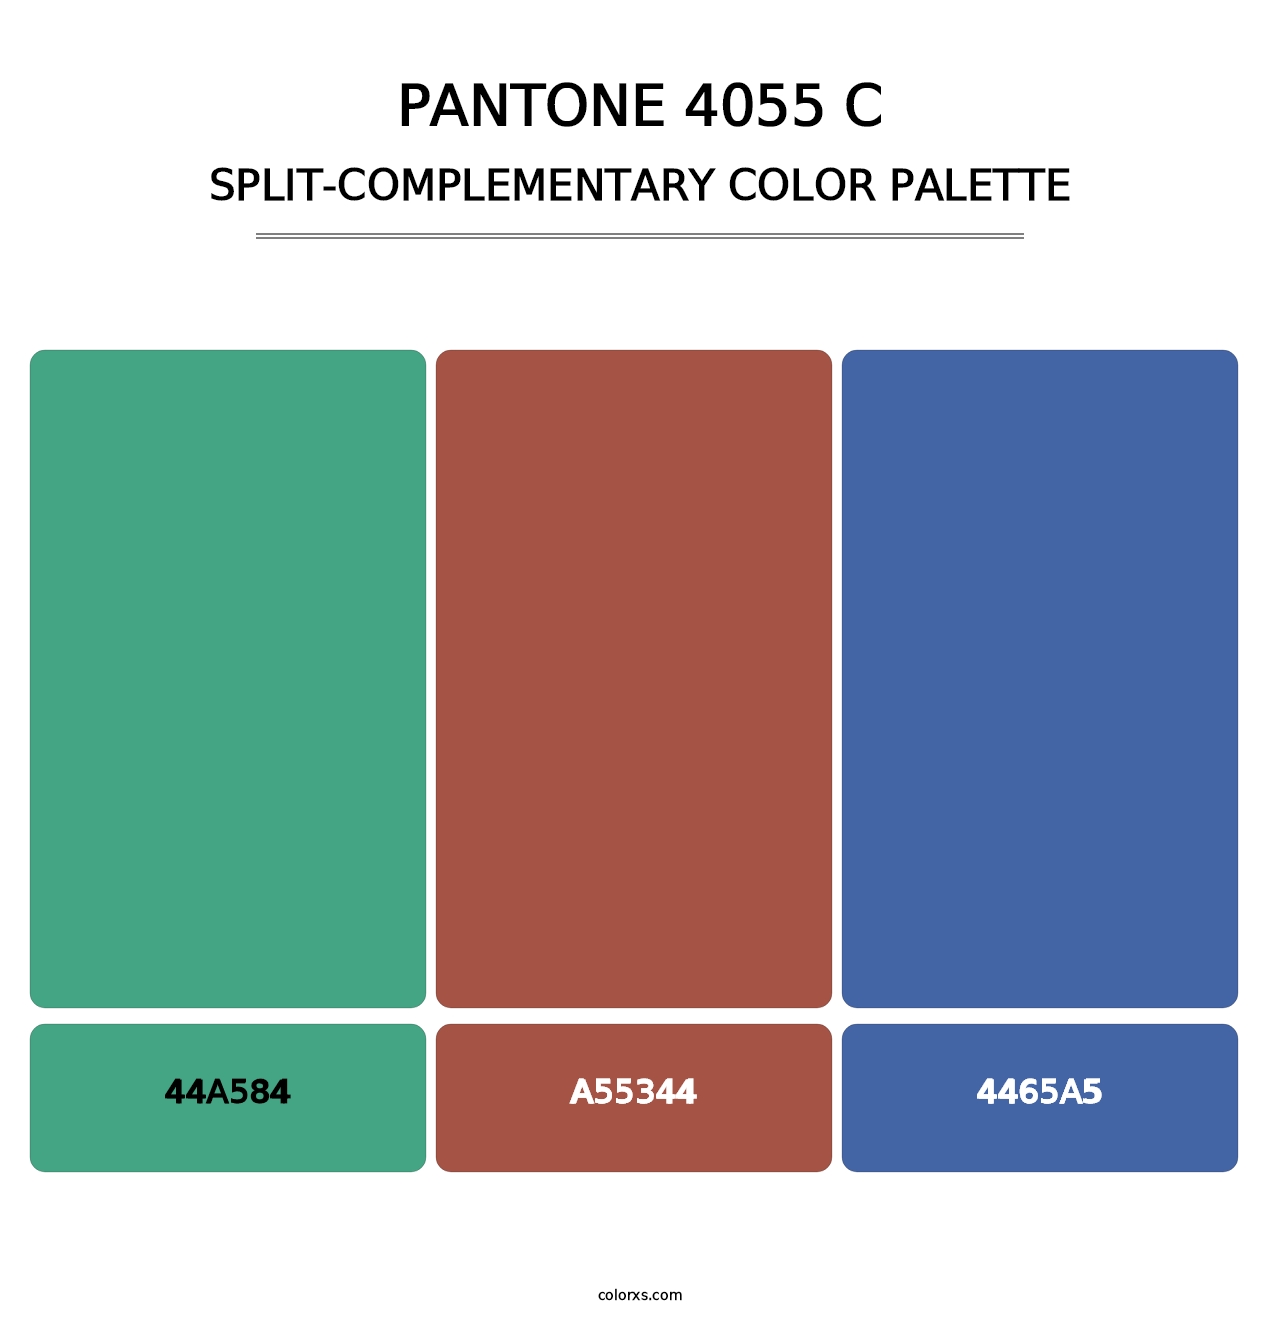 PANTONE 4055 C - Split-Complementary Color Palette